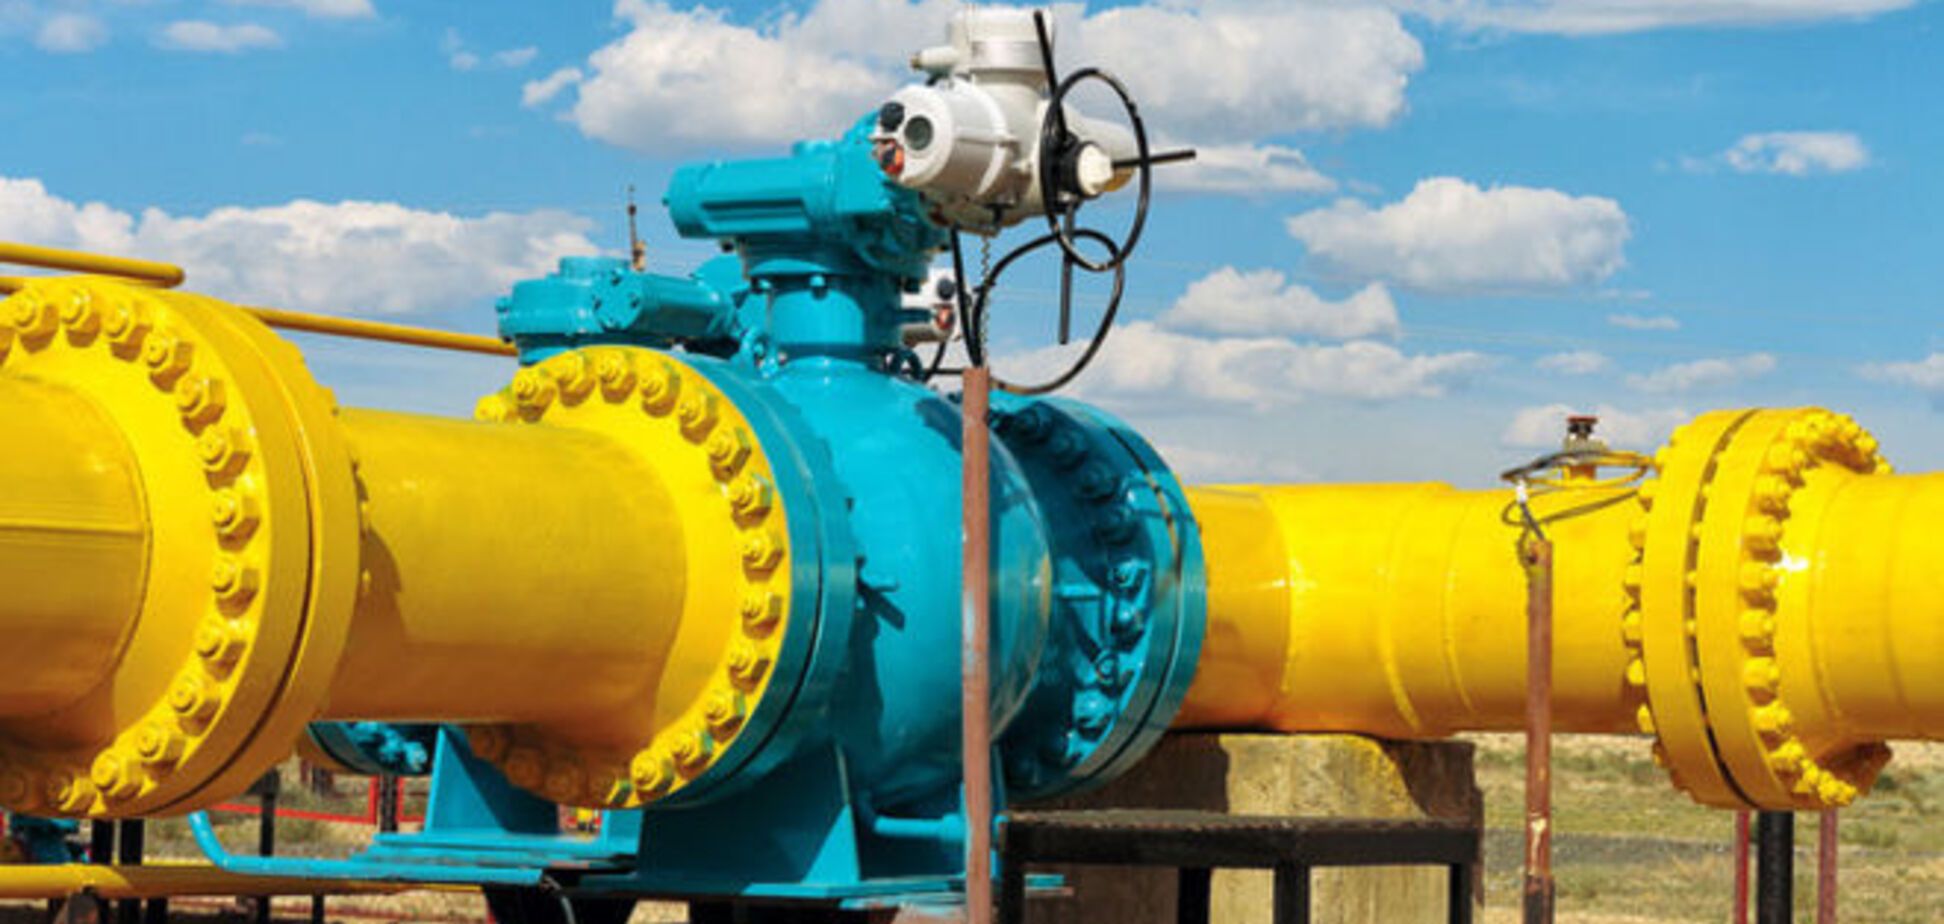 Від Яценюка вимагають зупинити дестабілізацію газового ринку: документ